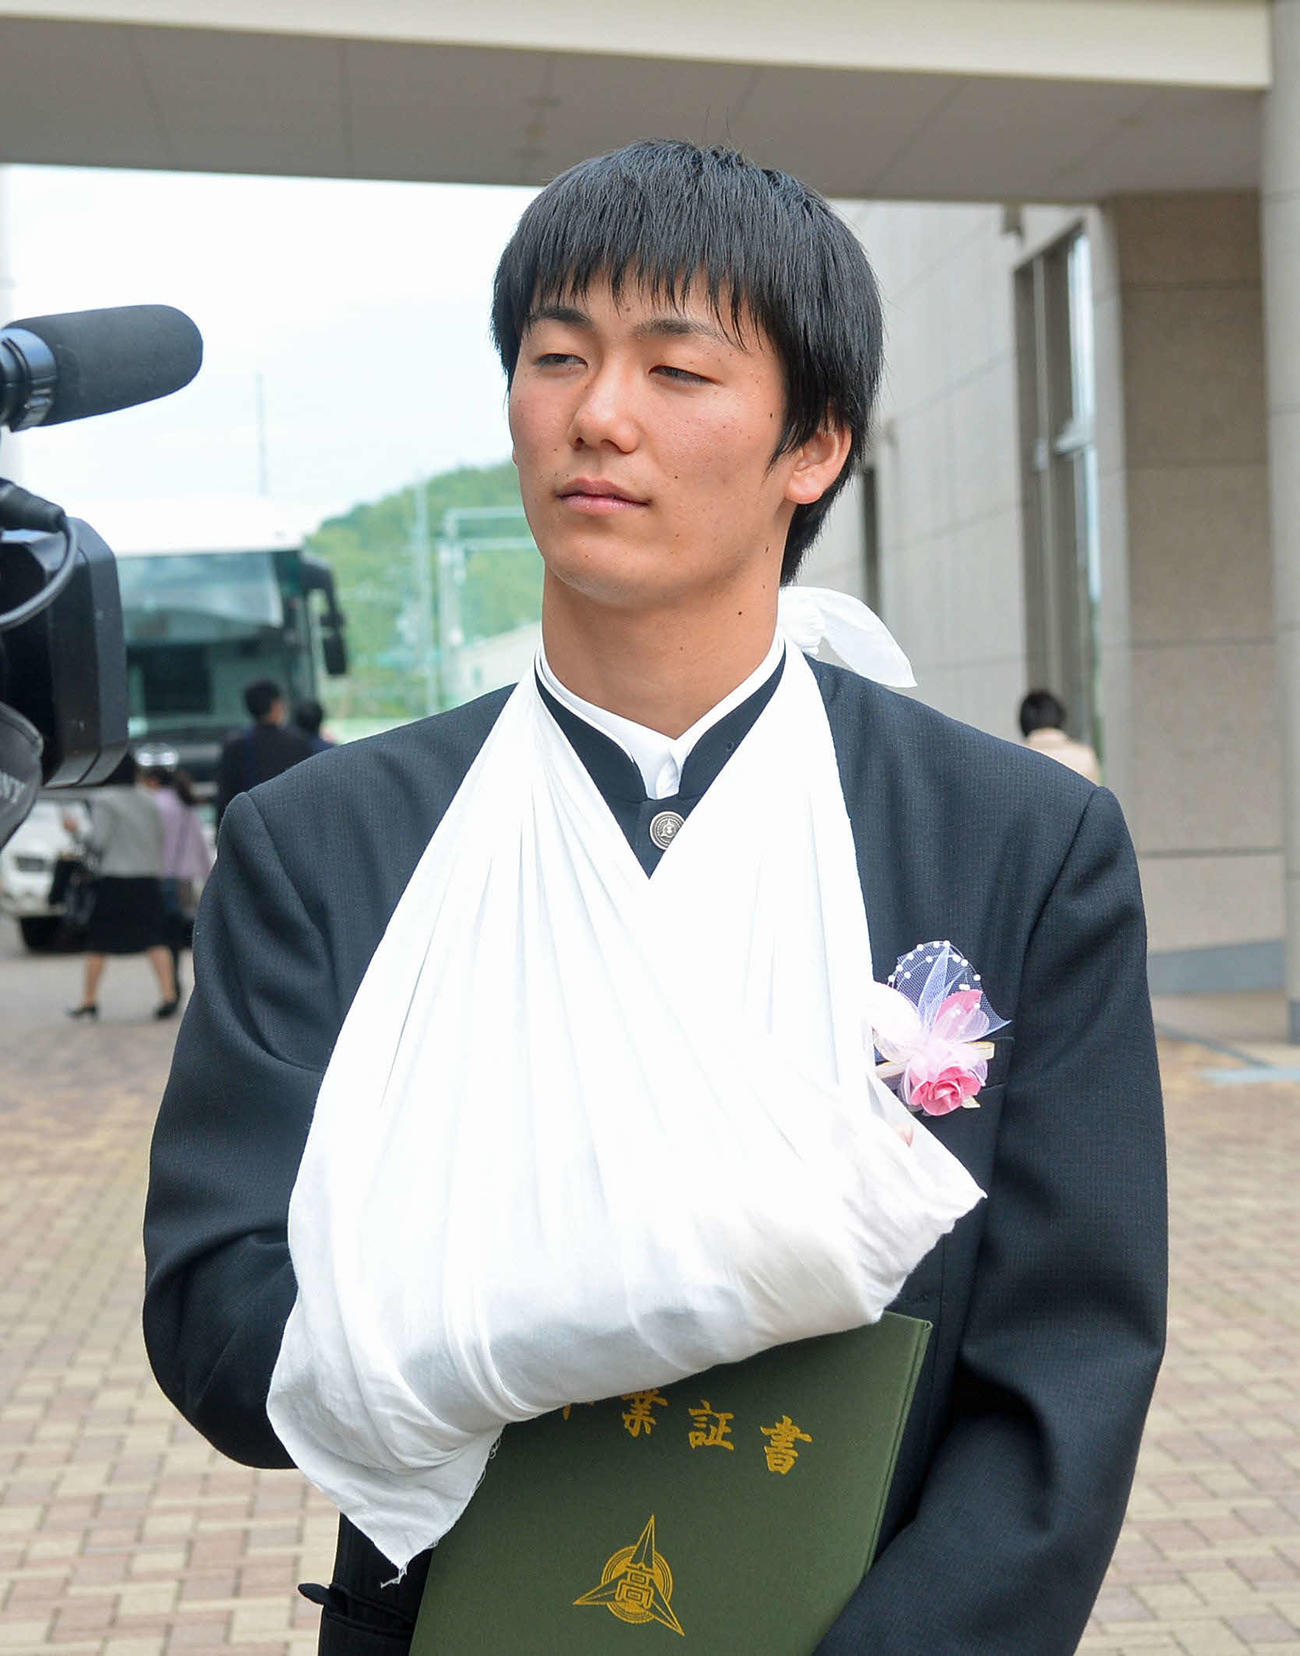 静岡学園MF小山は、右腕をつった姿で取材に応じる